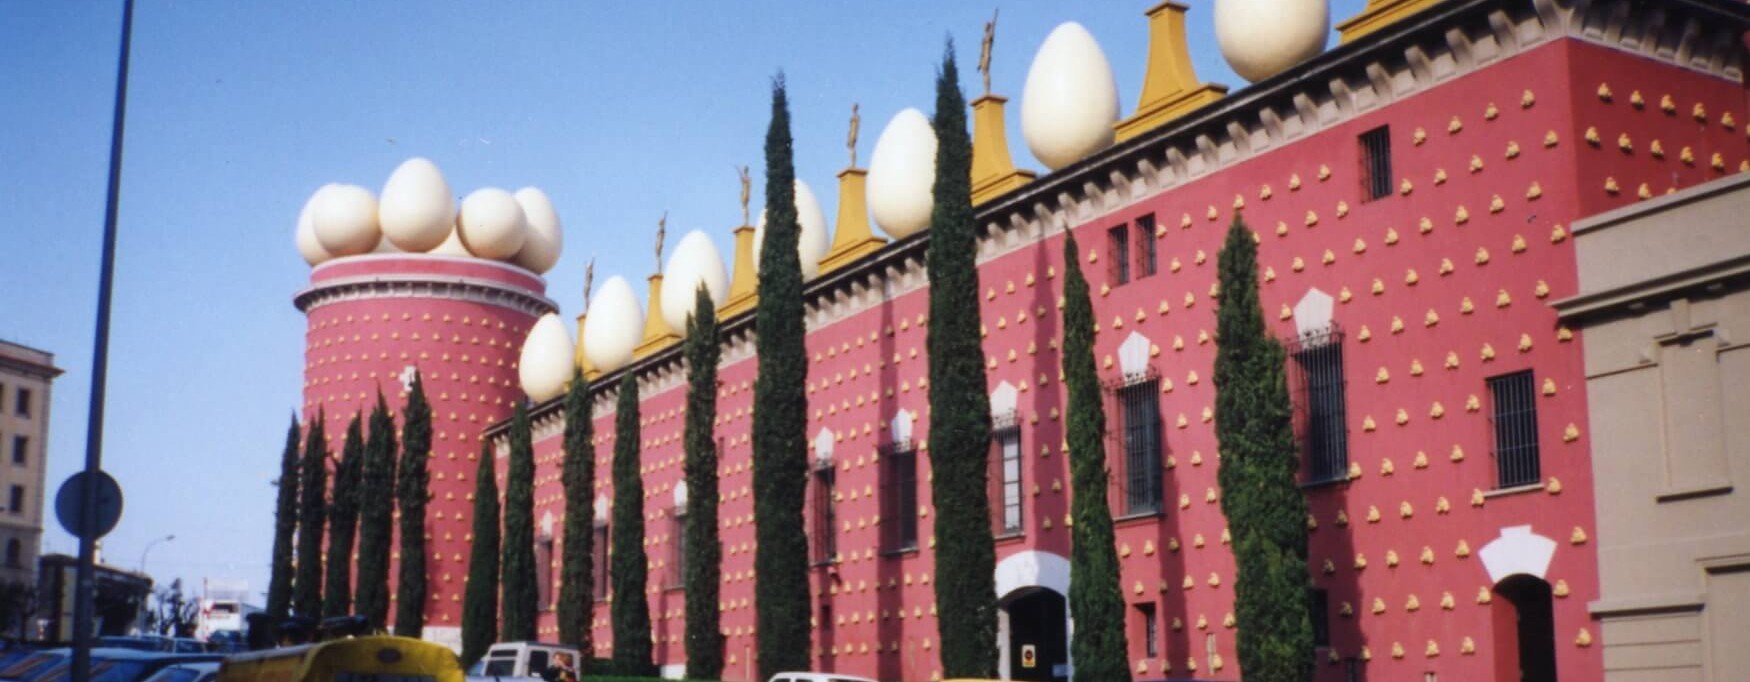 museo de Dalí 